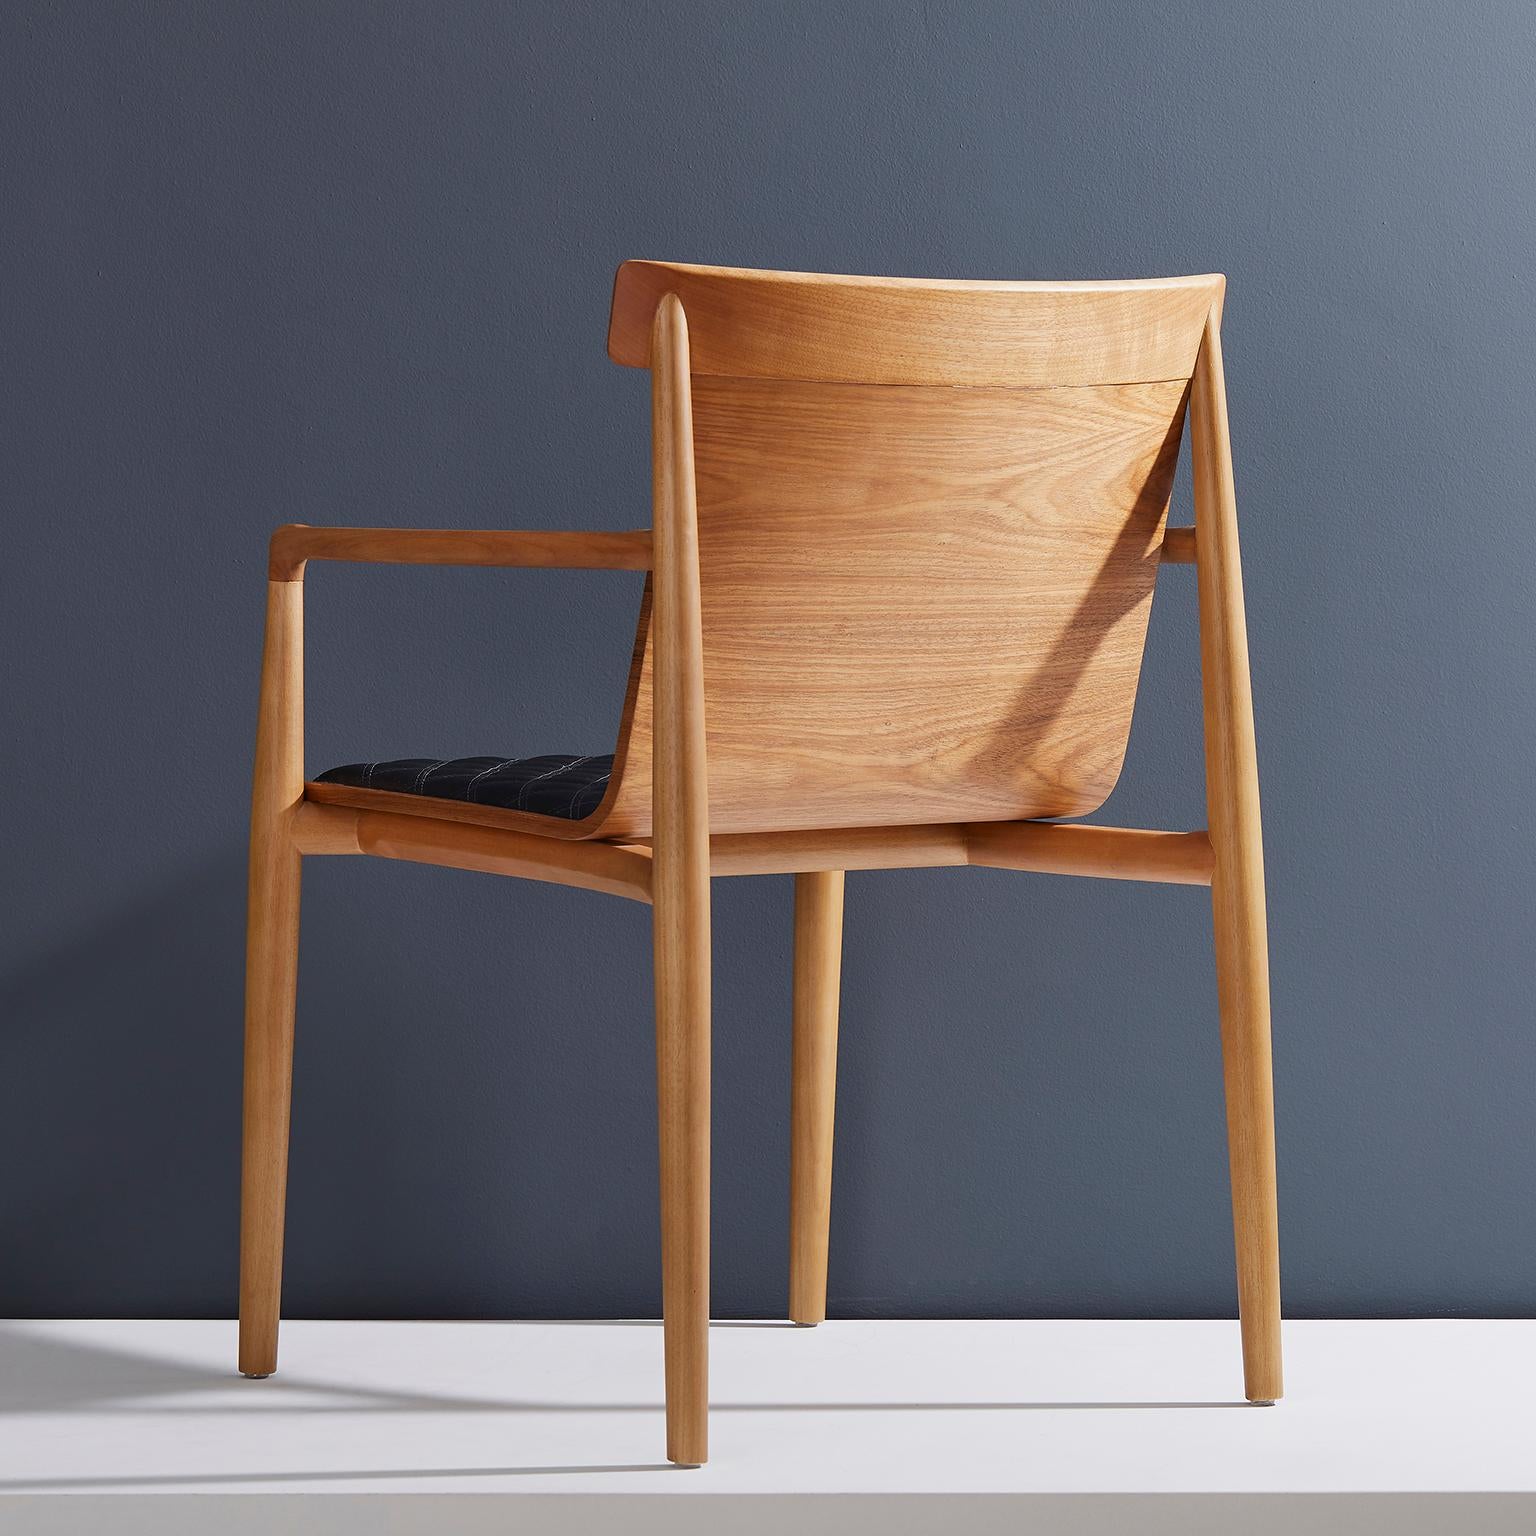 Sammlung trockener Stühle.

Das Konzept des Dry Stuhls besteht darin, eine Mischung aus verschiedenen Referenzen zu schaffen, die zu einem modernen Klassiker führen, der zwischen Retro und Moderne tanzt. Die Struktur wird mit schwerem und tiefem